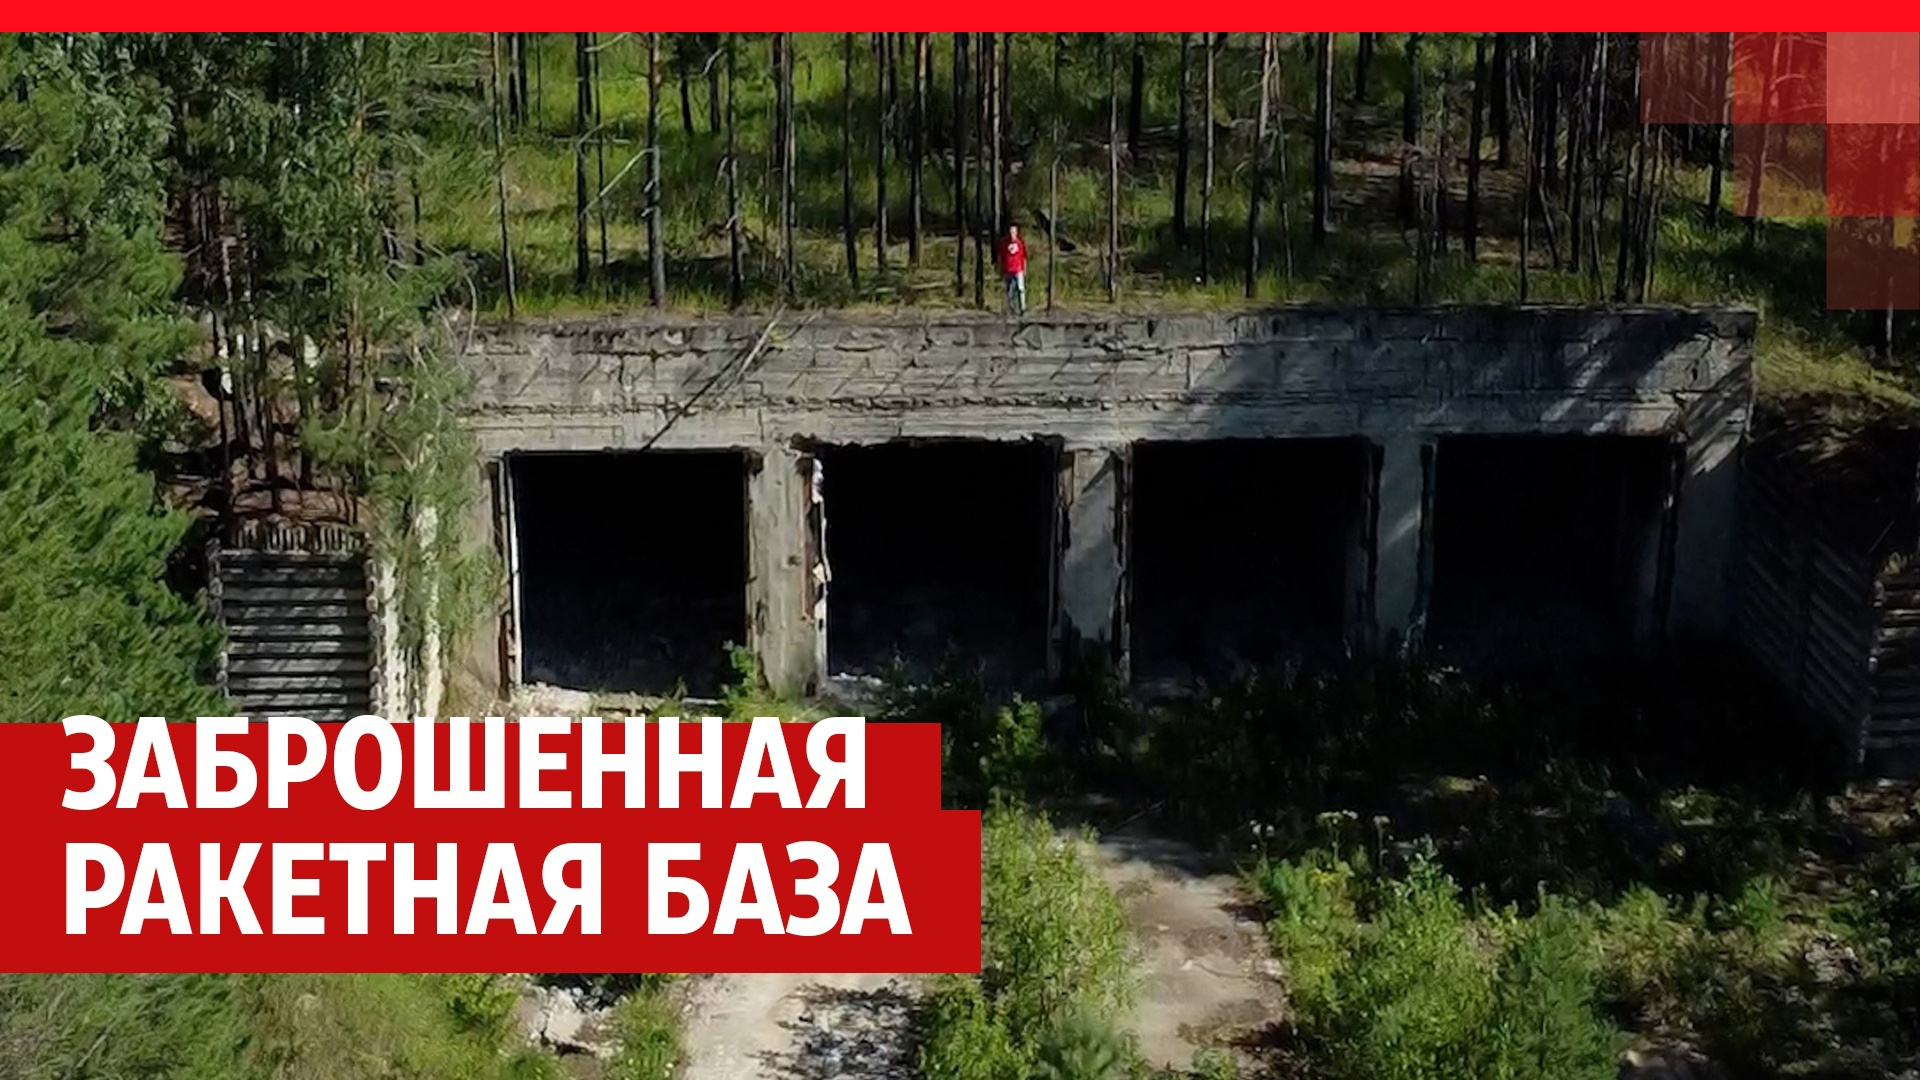 Как сейчас выглядит ядерная база в российской глубинке, внушавшая страх всему миру. Видеорепортаж